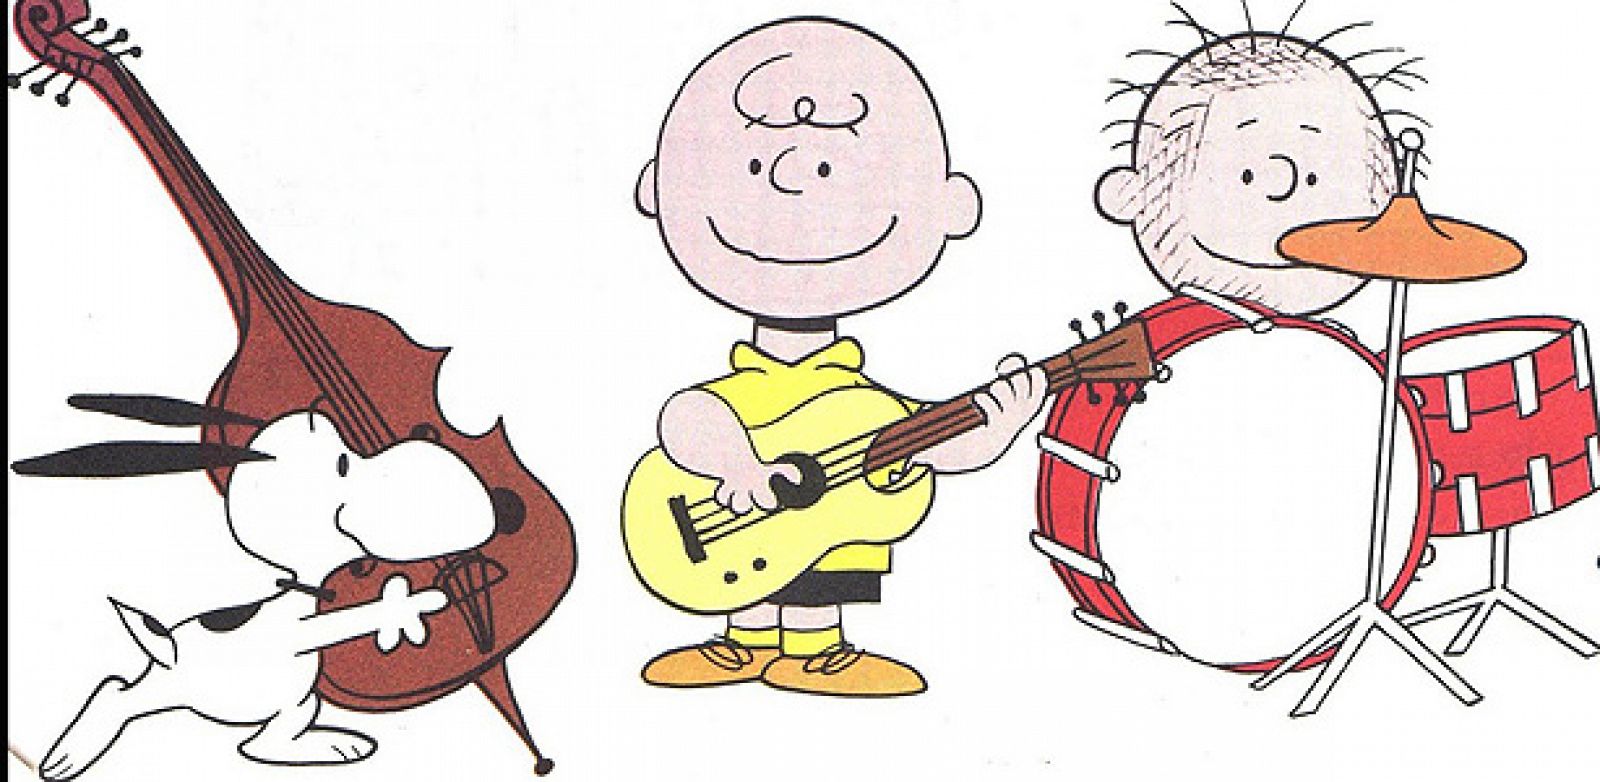 Viñeta de Carlitos y Snoopy, de Schulz